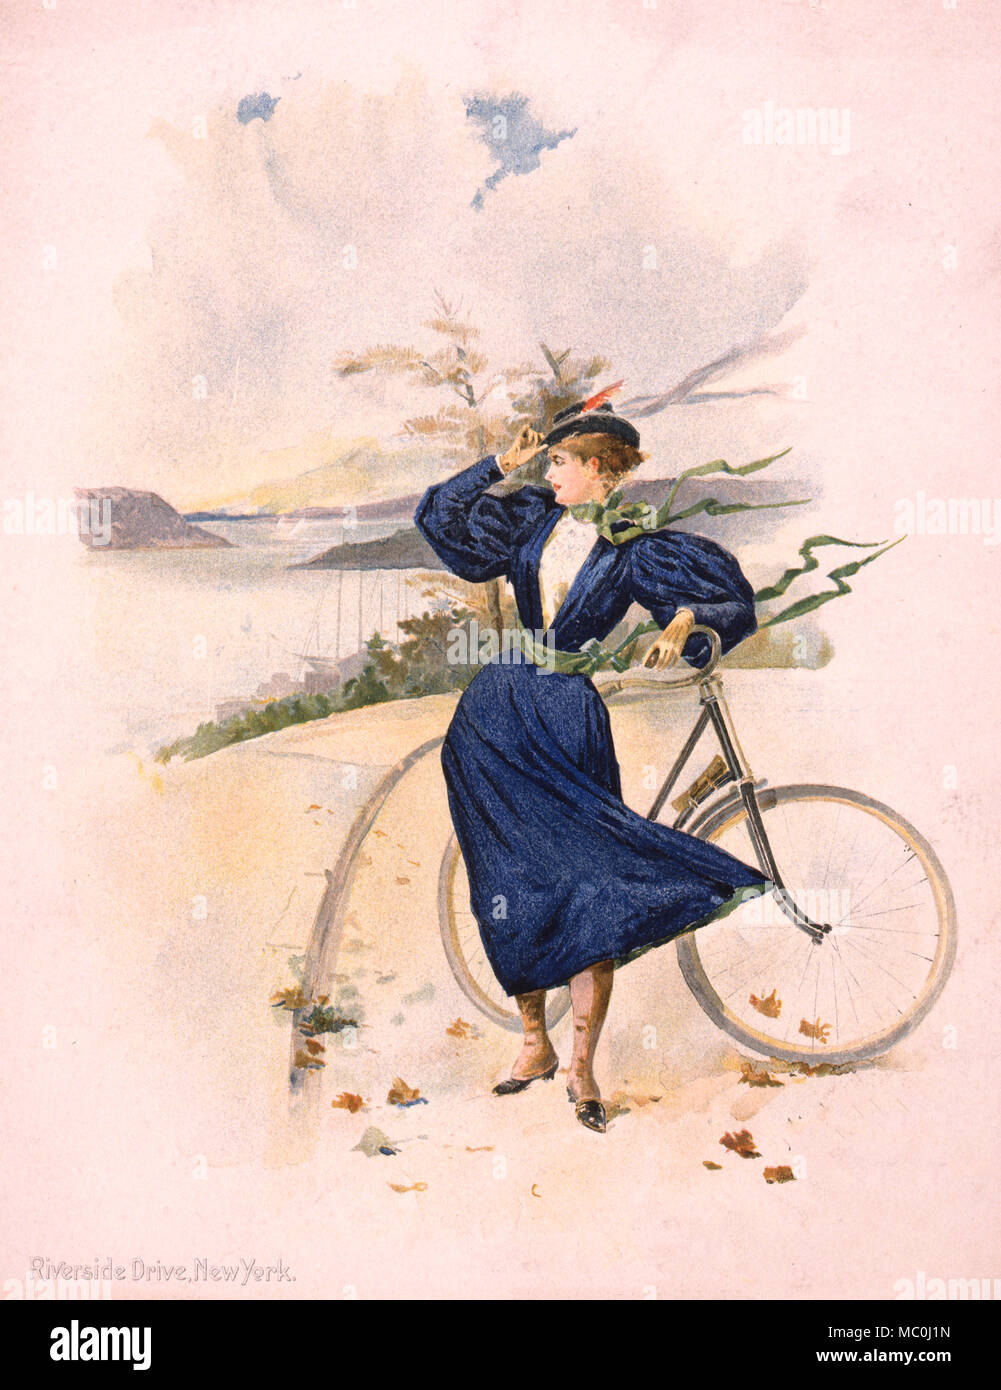 Riverside Drive, New York - Drucken zeigt eine junge Frau, die neben einem Fahrradverleih in der Nähe des Wasser, ca. 1896 Stockfoto